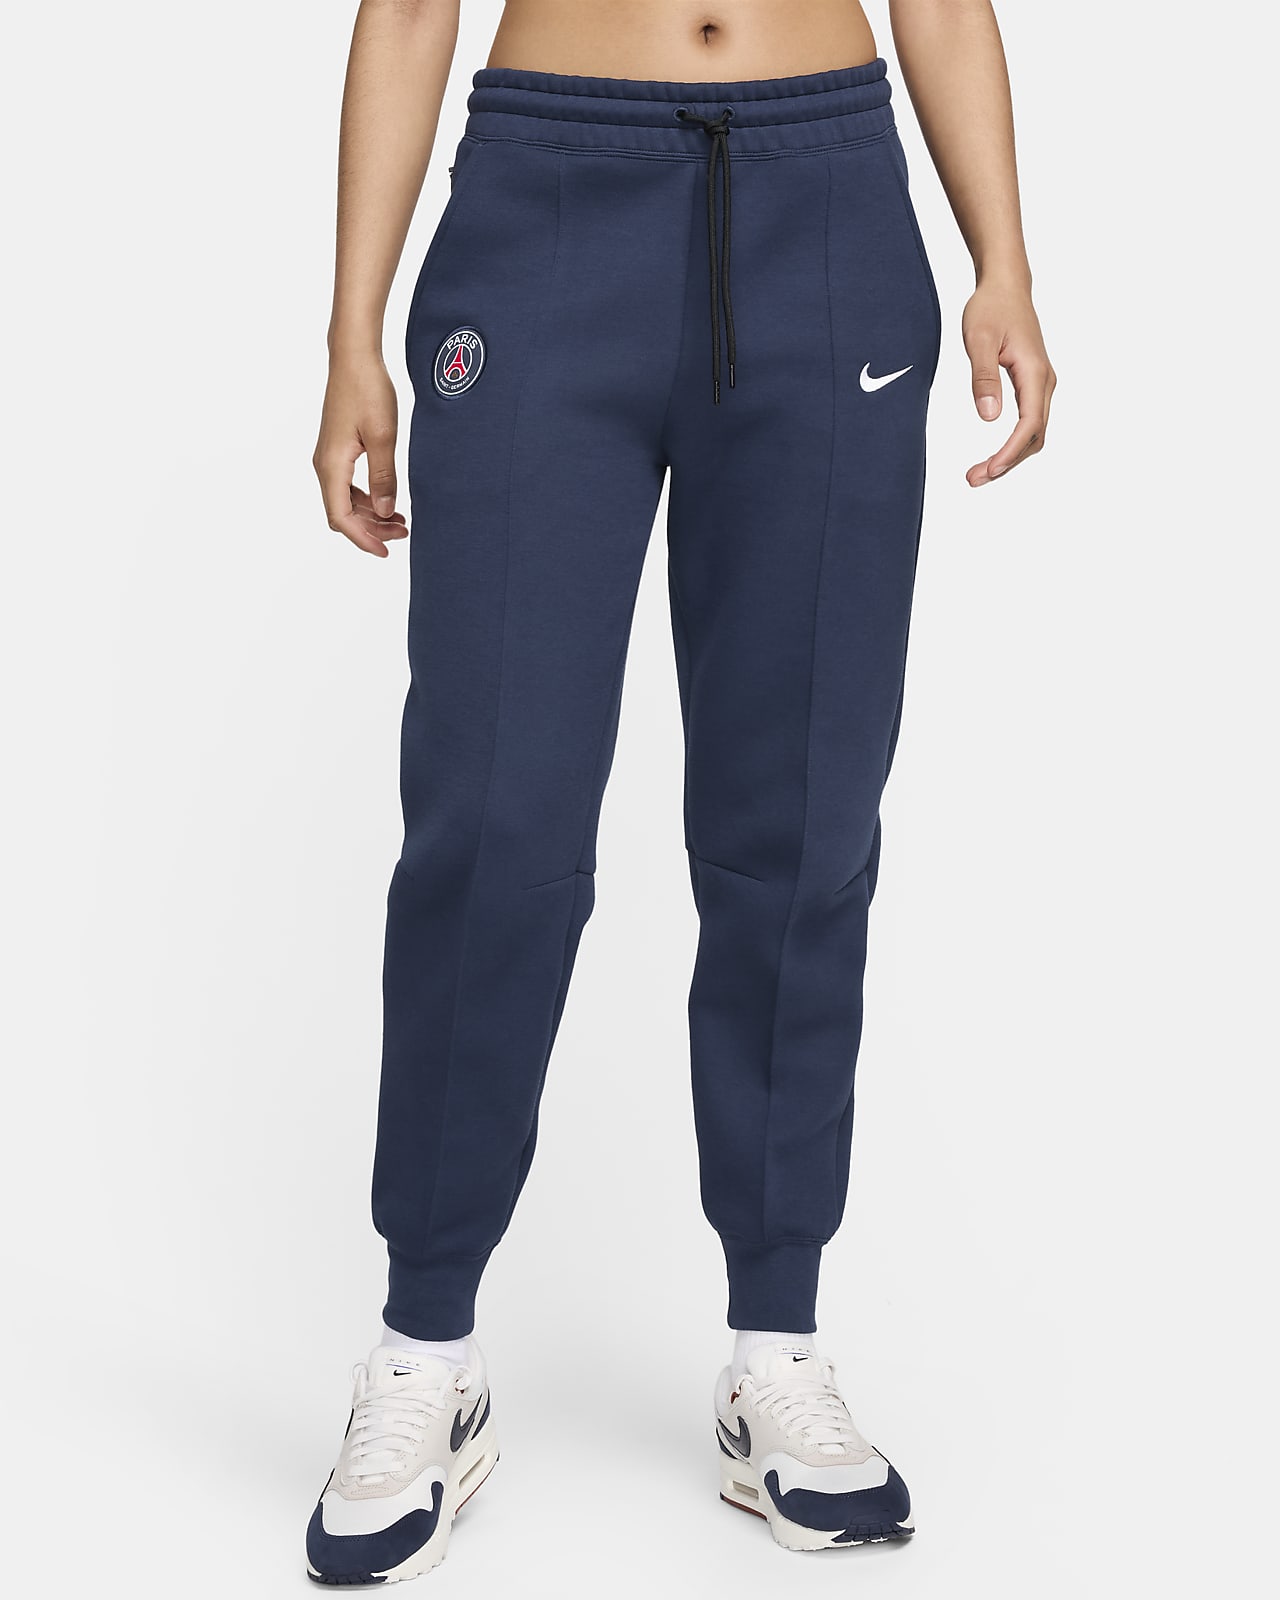 París Saint-Germain Club Fleece SE Pantalón de talle medio de fútbol Nike - Mujer